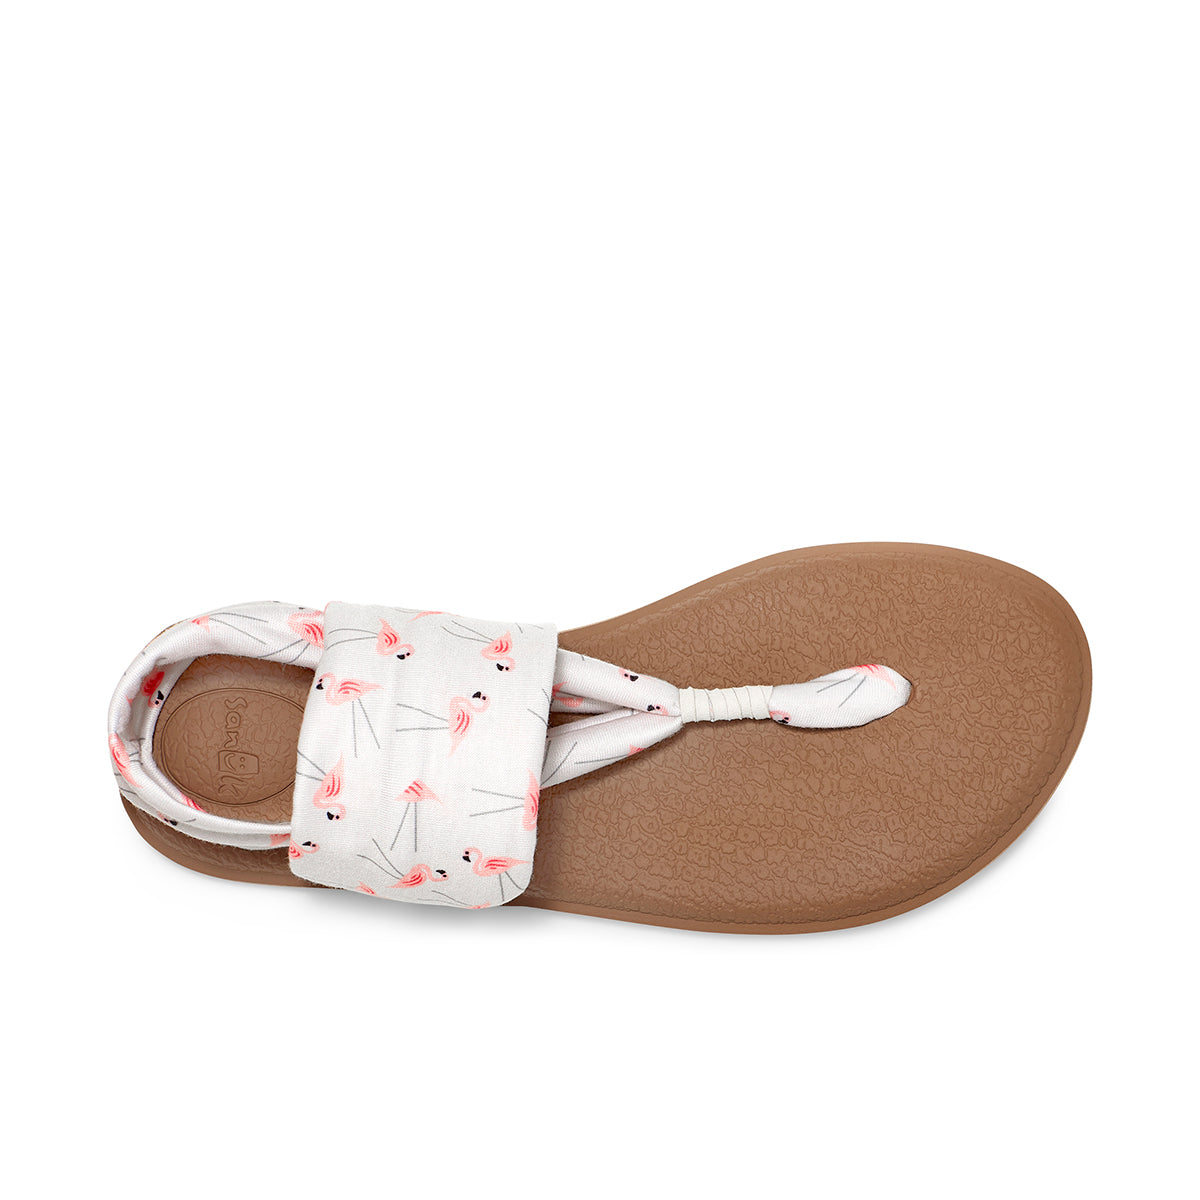 Sanuk Yoga Sling Sandal; flip-flops; beige/white stripe; womens size 8